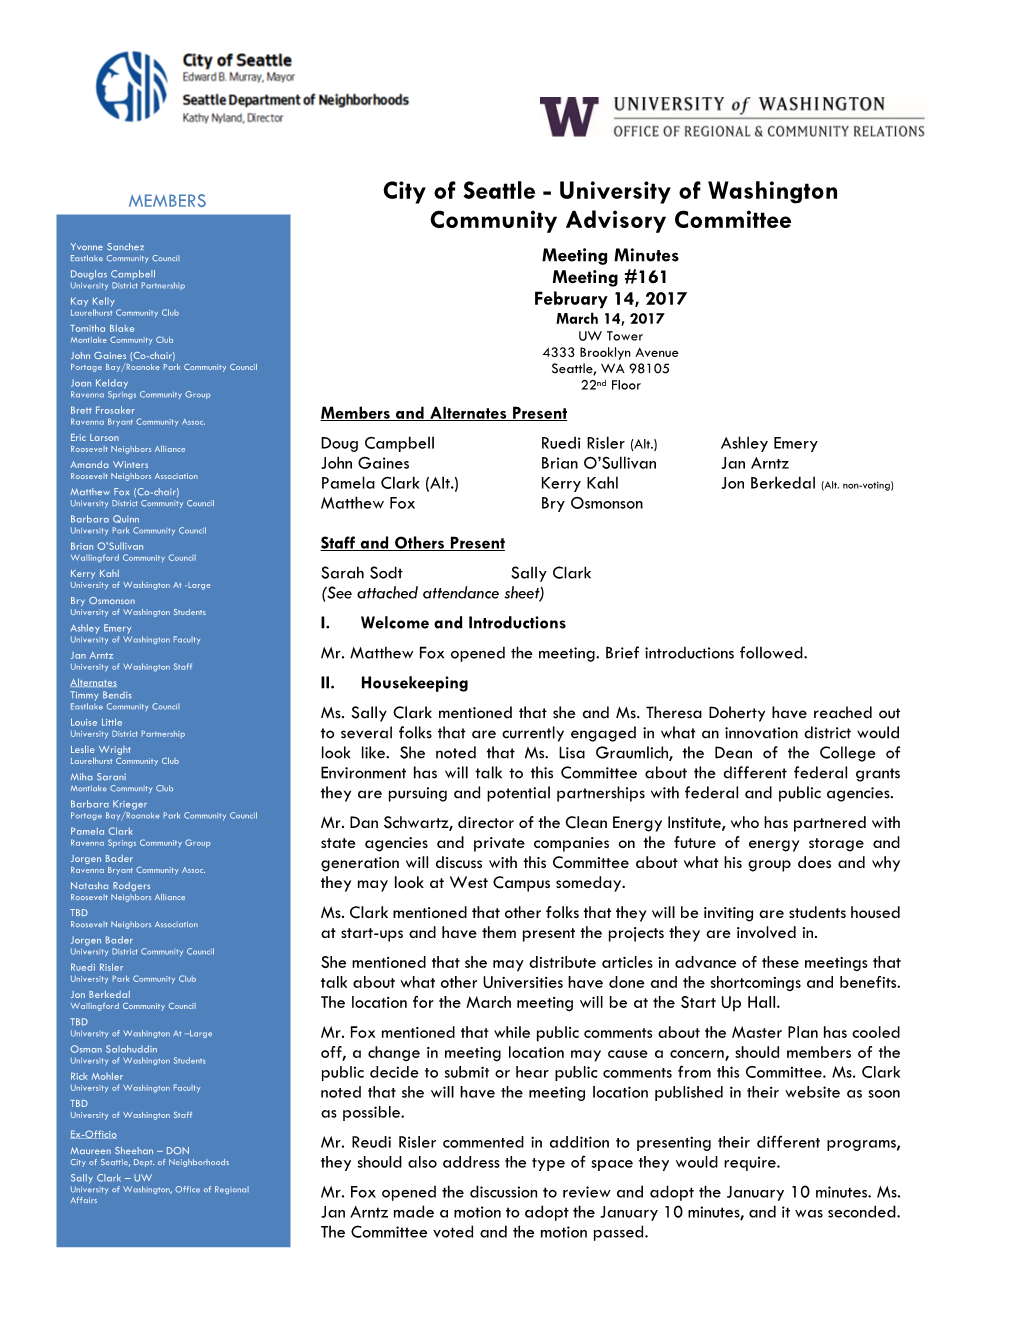 University of Washington Community Advisory Committee